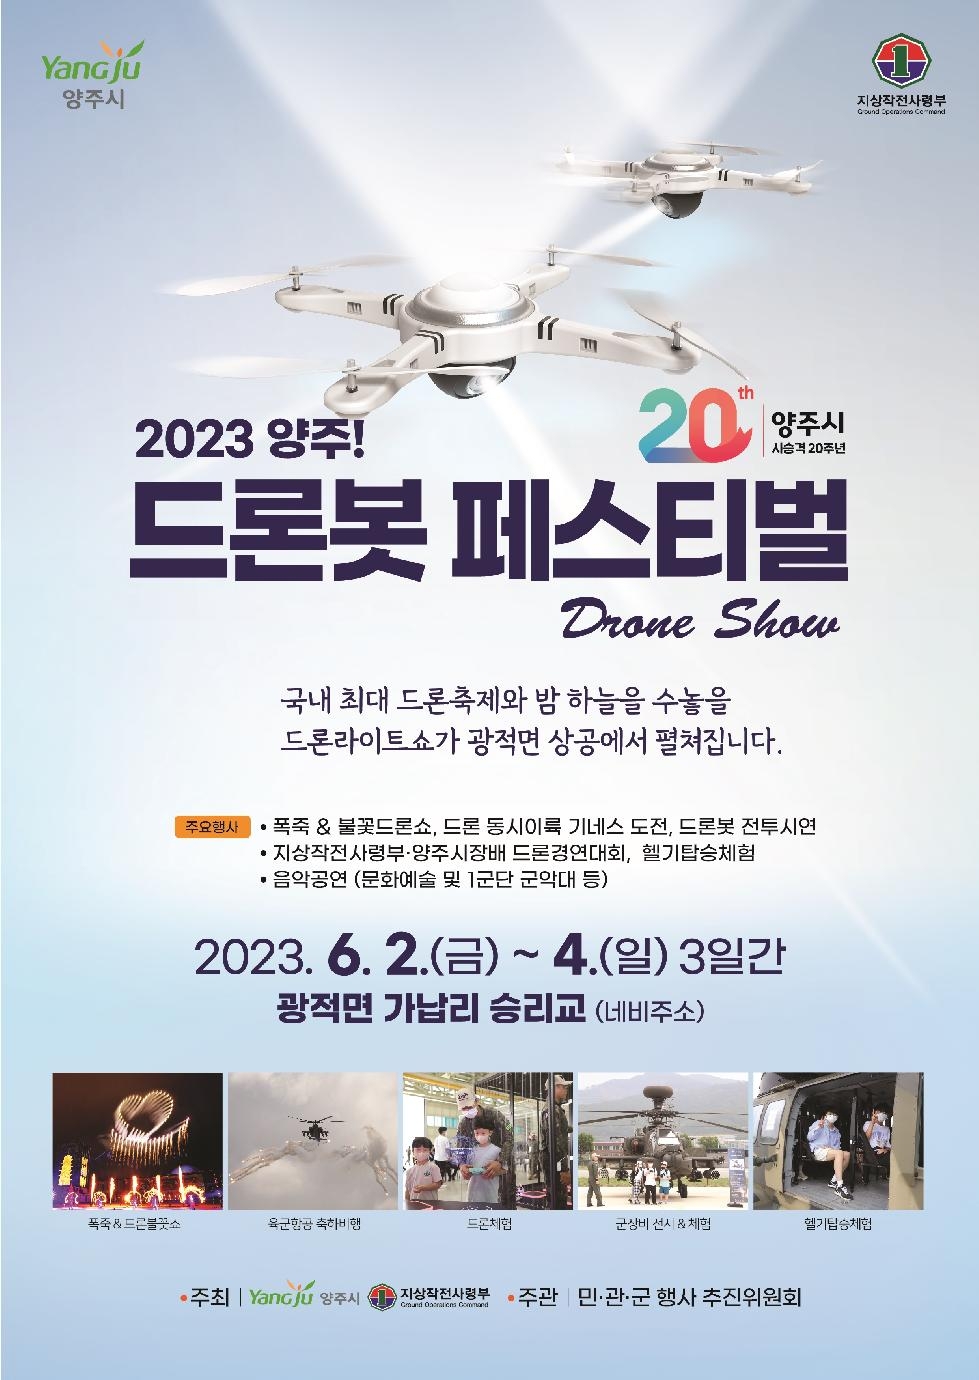 양주시, 2023 드론봇 페스티벌 전시·체험부스 모집